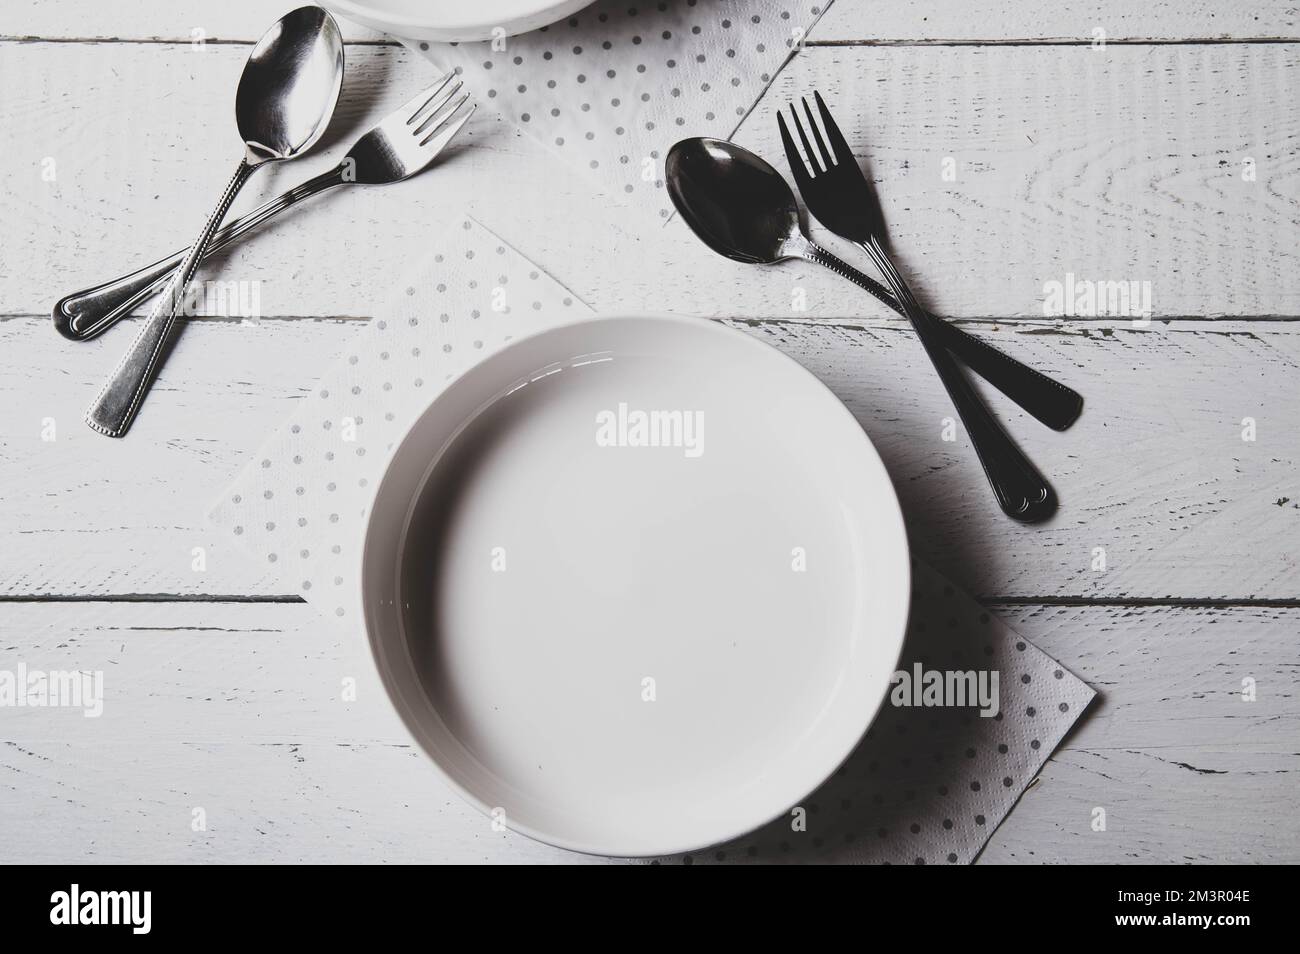 Piatto bianco vuoto con forchetta e cucchiaio su fondo astratto, bianco, opaco Foto Stock